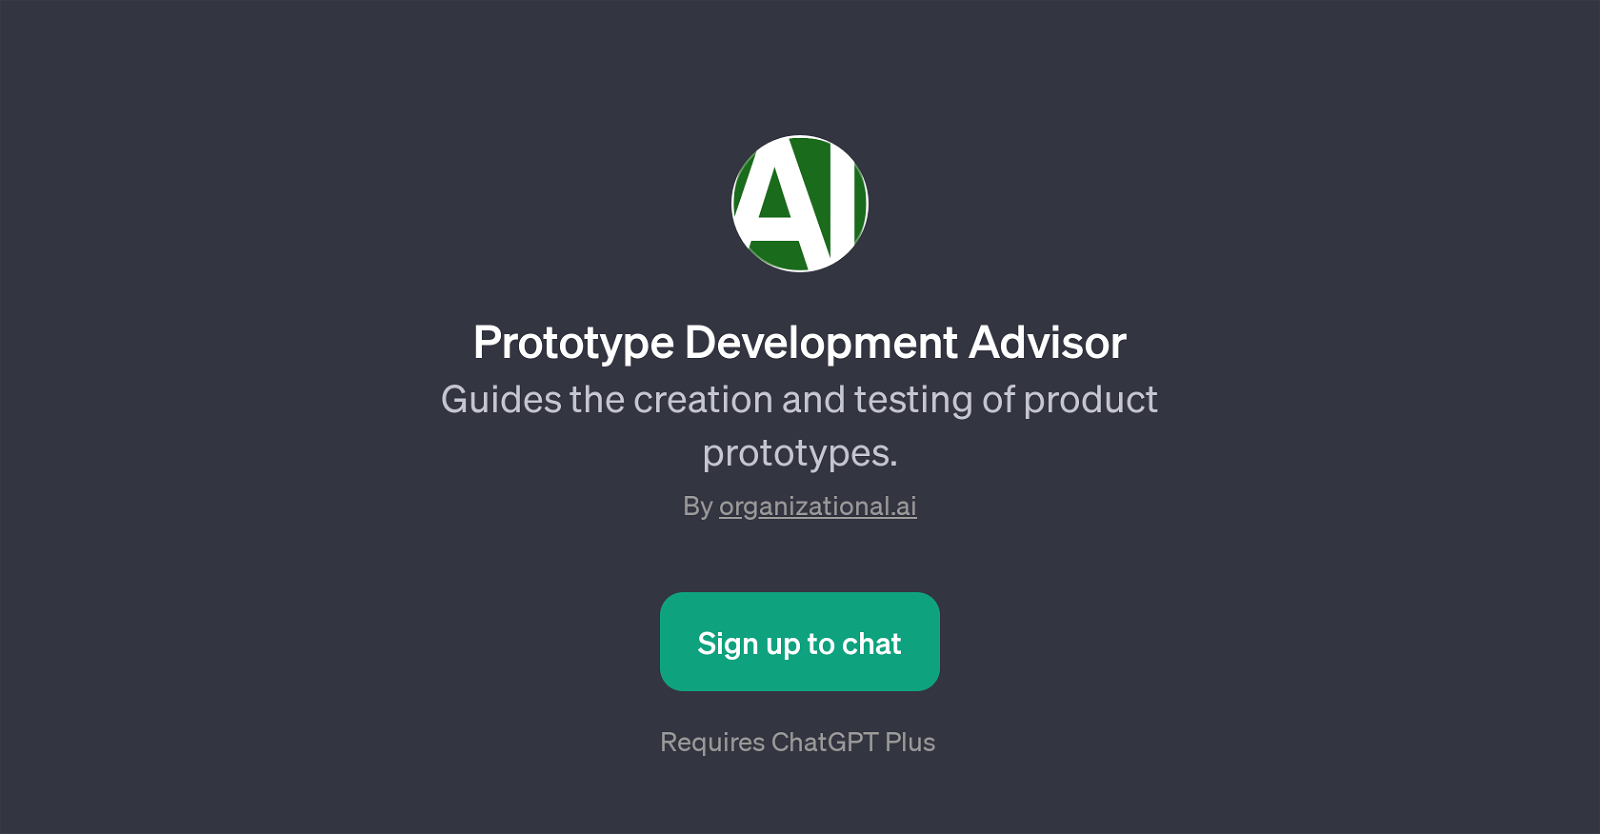 Prototype Development Advisor website